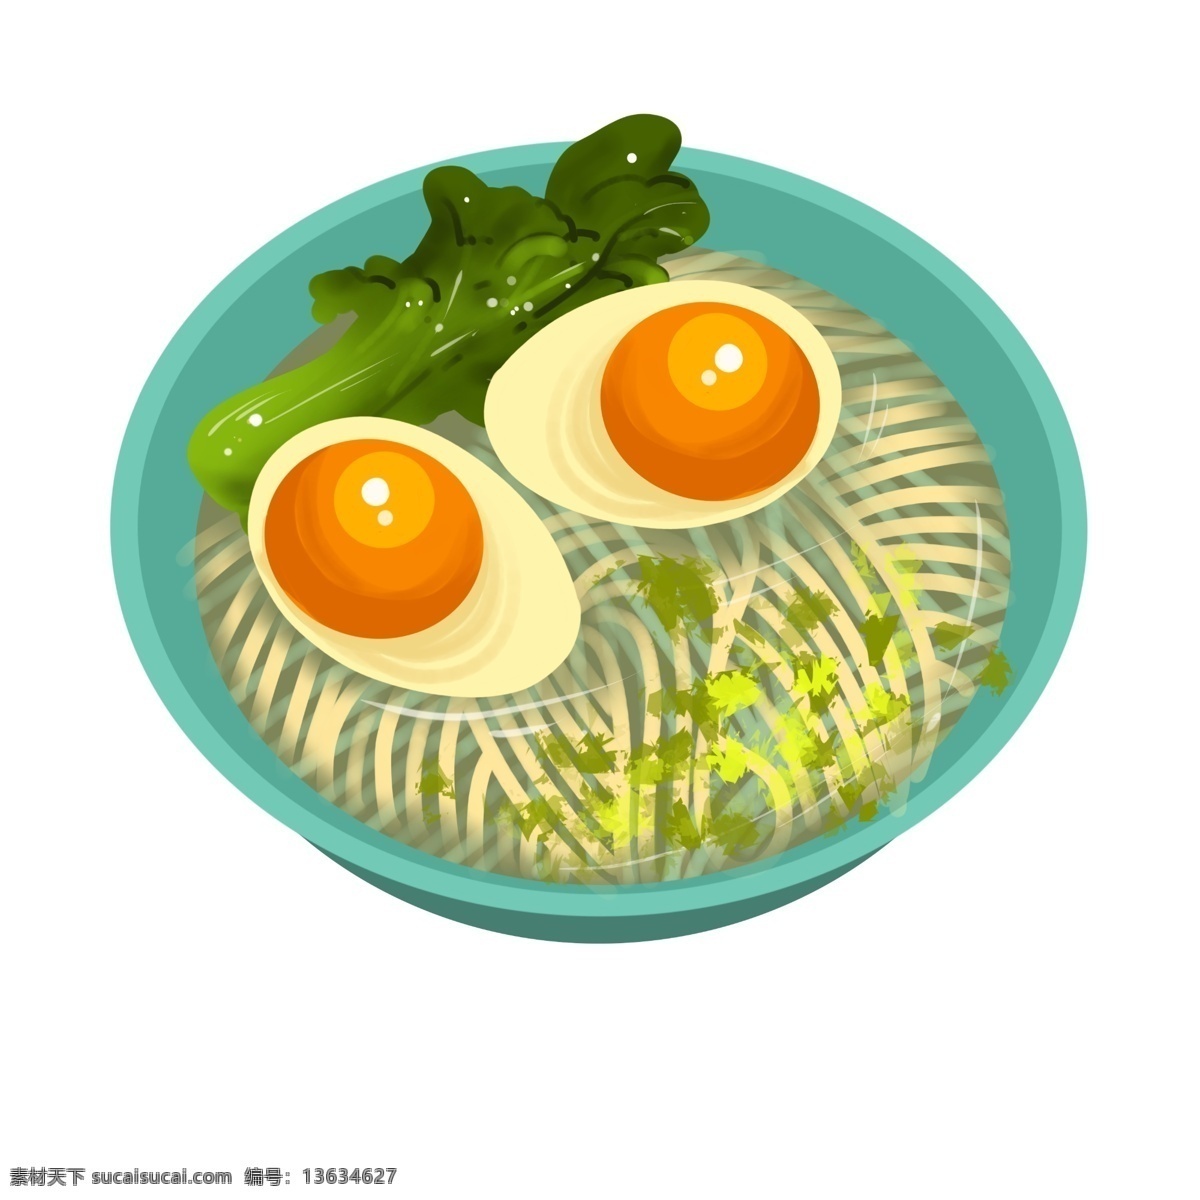 美味 鸡蛋 拉面 插画 鸡蛋的拉面 美味的拉面 卡通插画 拉面插画 面条插画 食物插画 食品插画